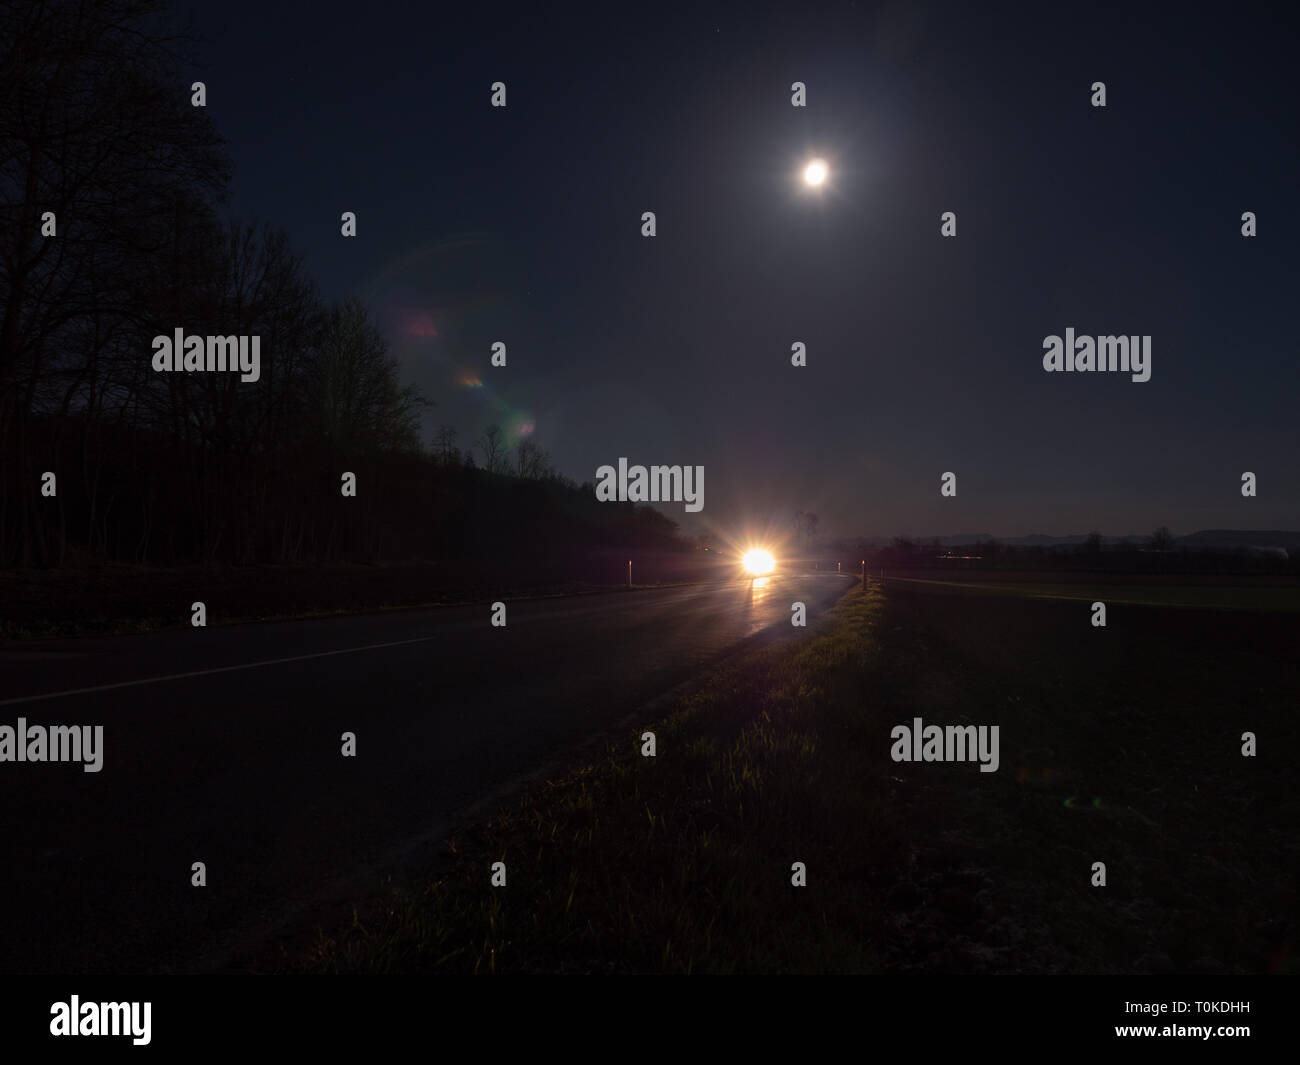 Paese di avvolgimento strada illuminata dai fari di un auto in avvicinamento con la luna piena e il paesaggio misterioso Foto Stock